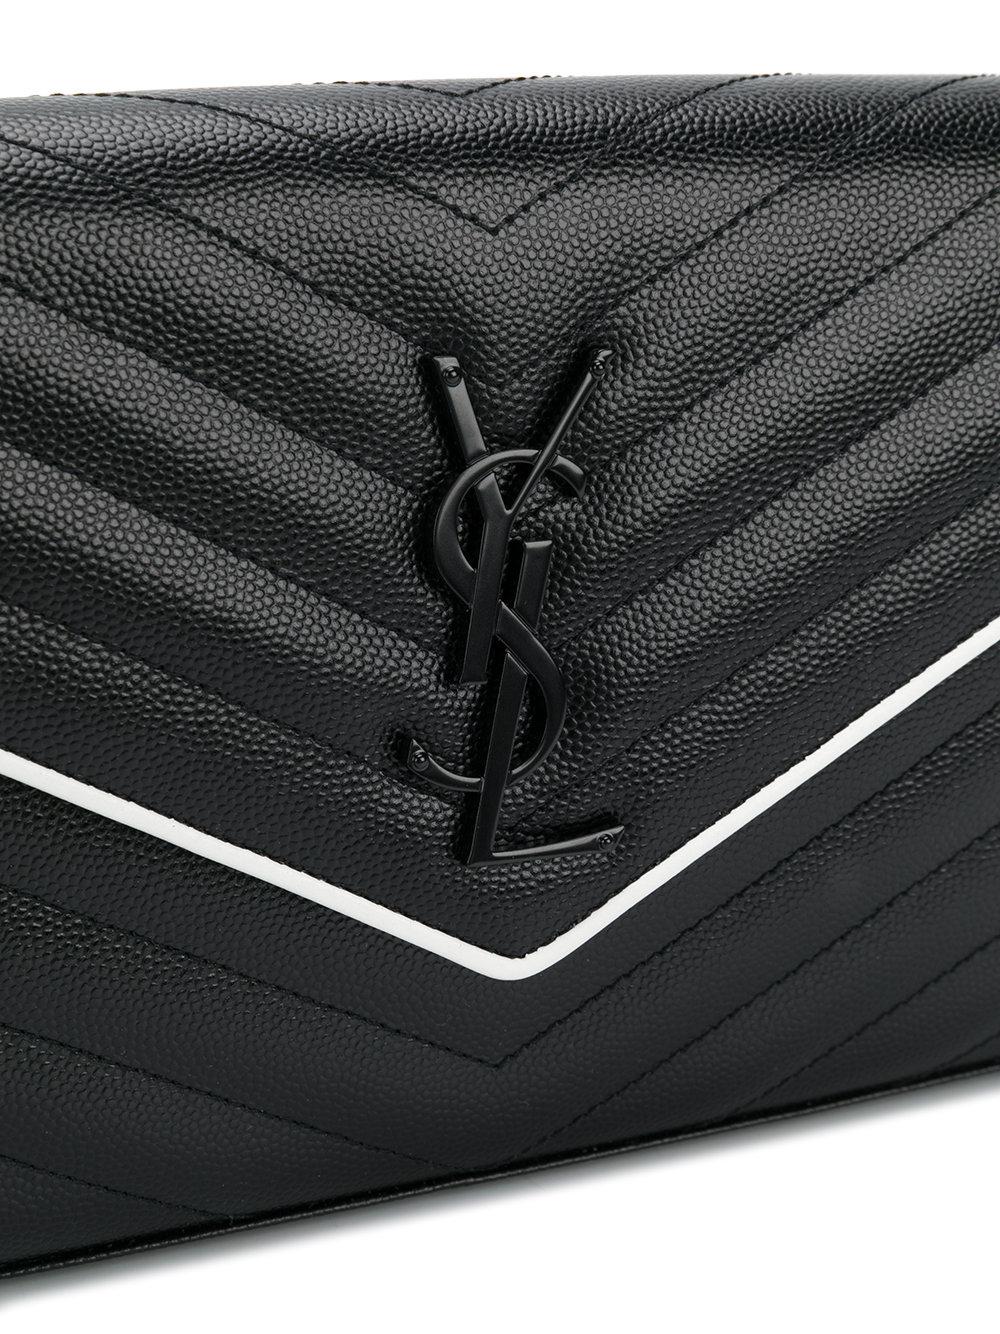 Saint Laurent Long Wallet YSL Monogram Large Flap Black Leather Cassandra  Gold